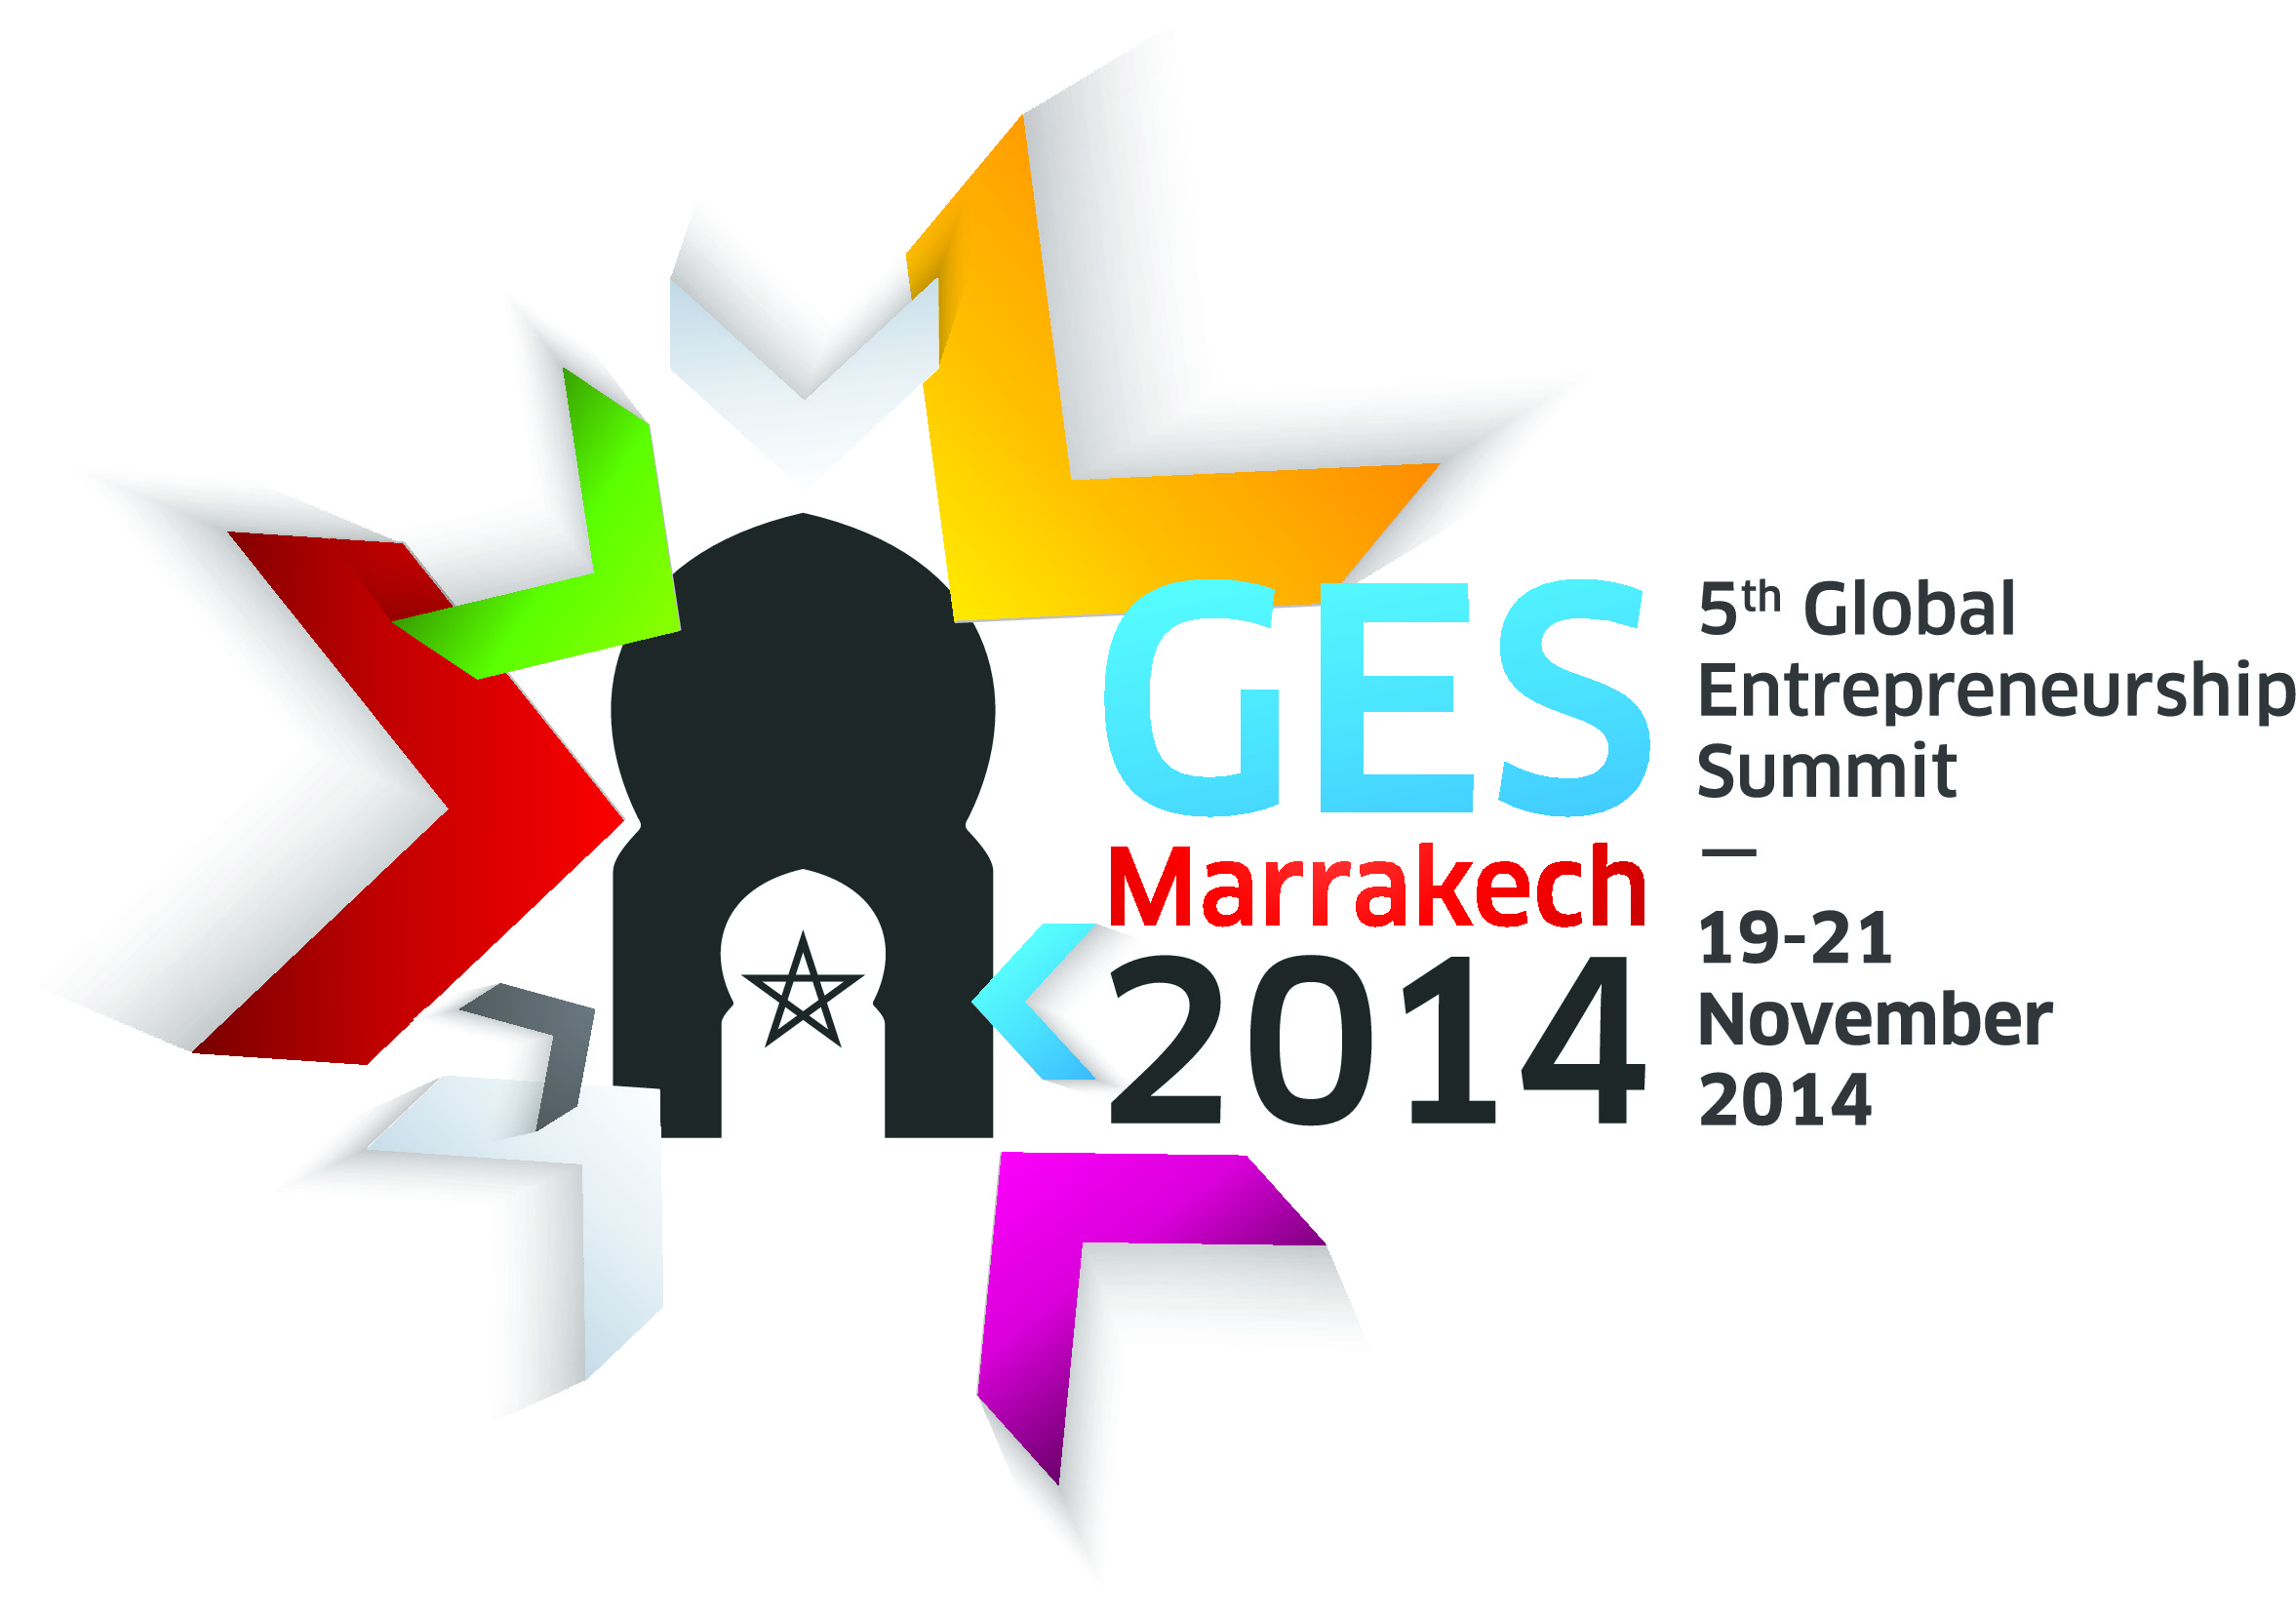 La 5eme  Edition annuelle du Sommet Global de l'Entrepreneuriat se déroulera du 19 au 21 novembre 2014 à Marrakech, au Maroc